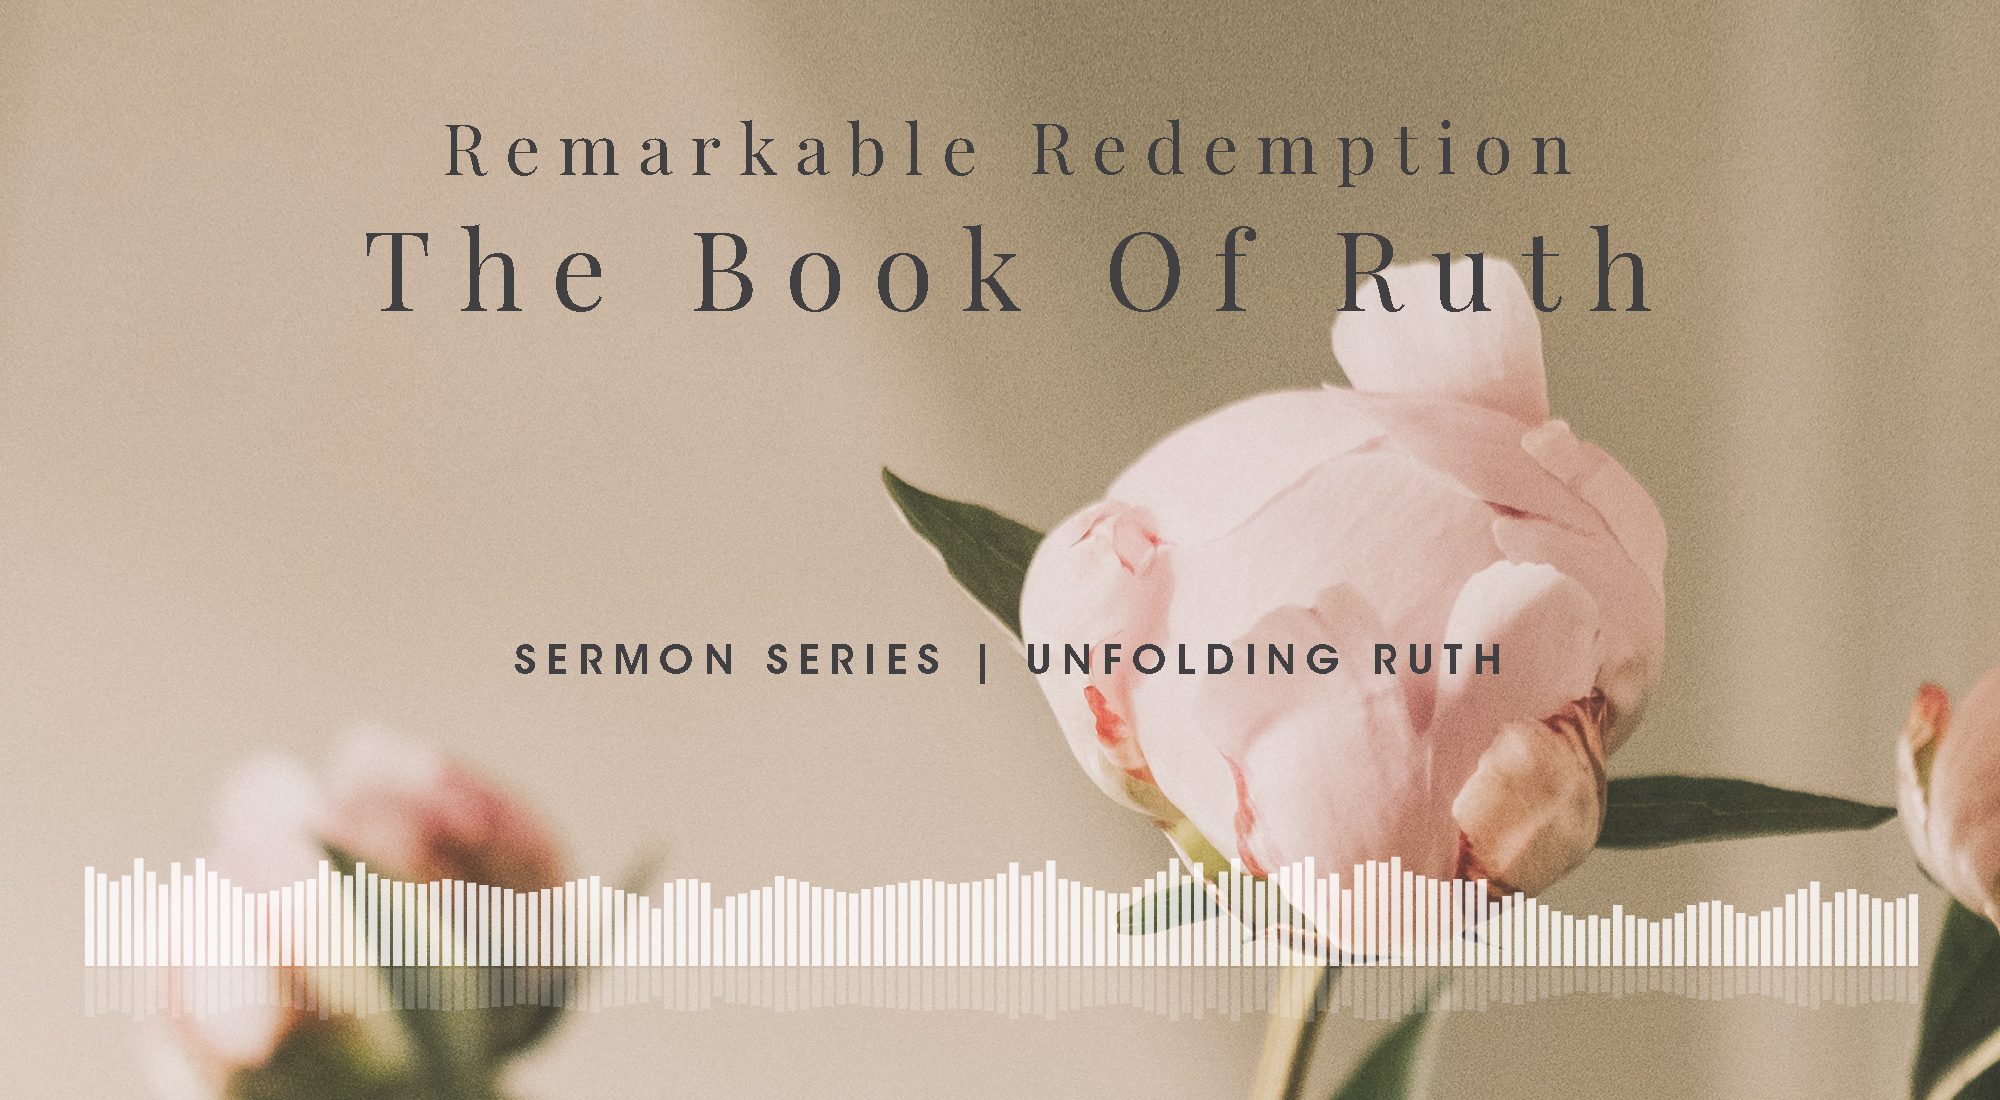 A Sermon Series on Ruth 1-4